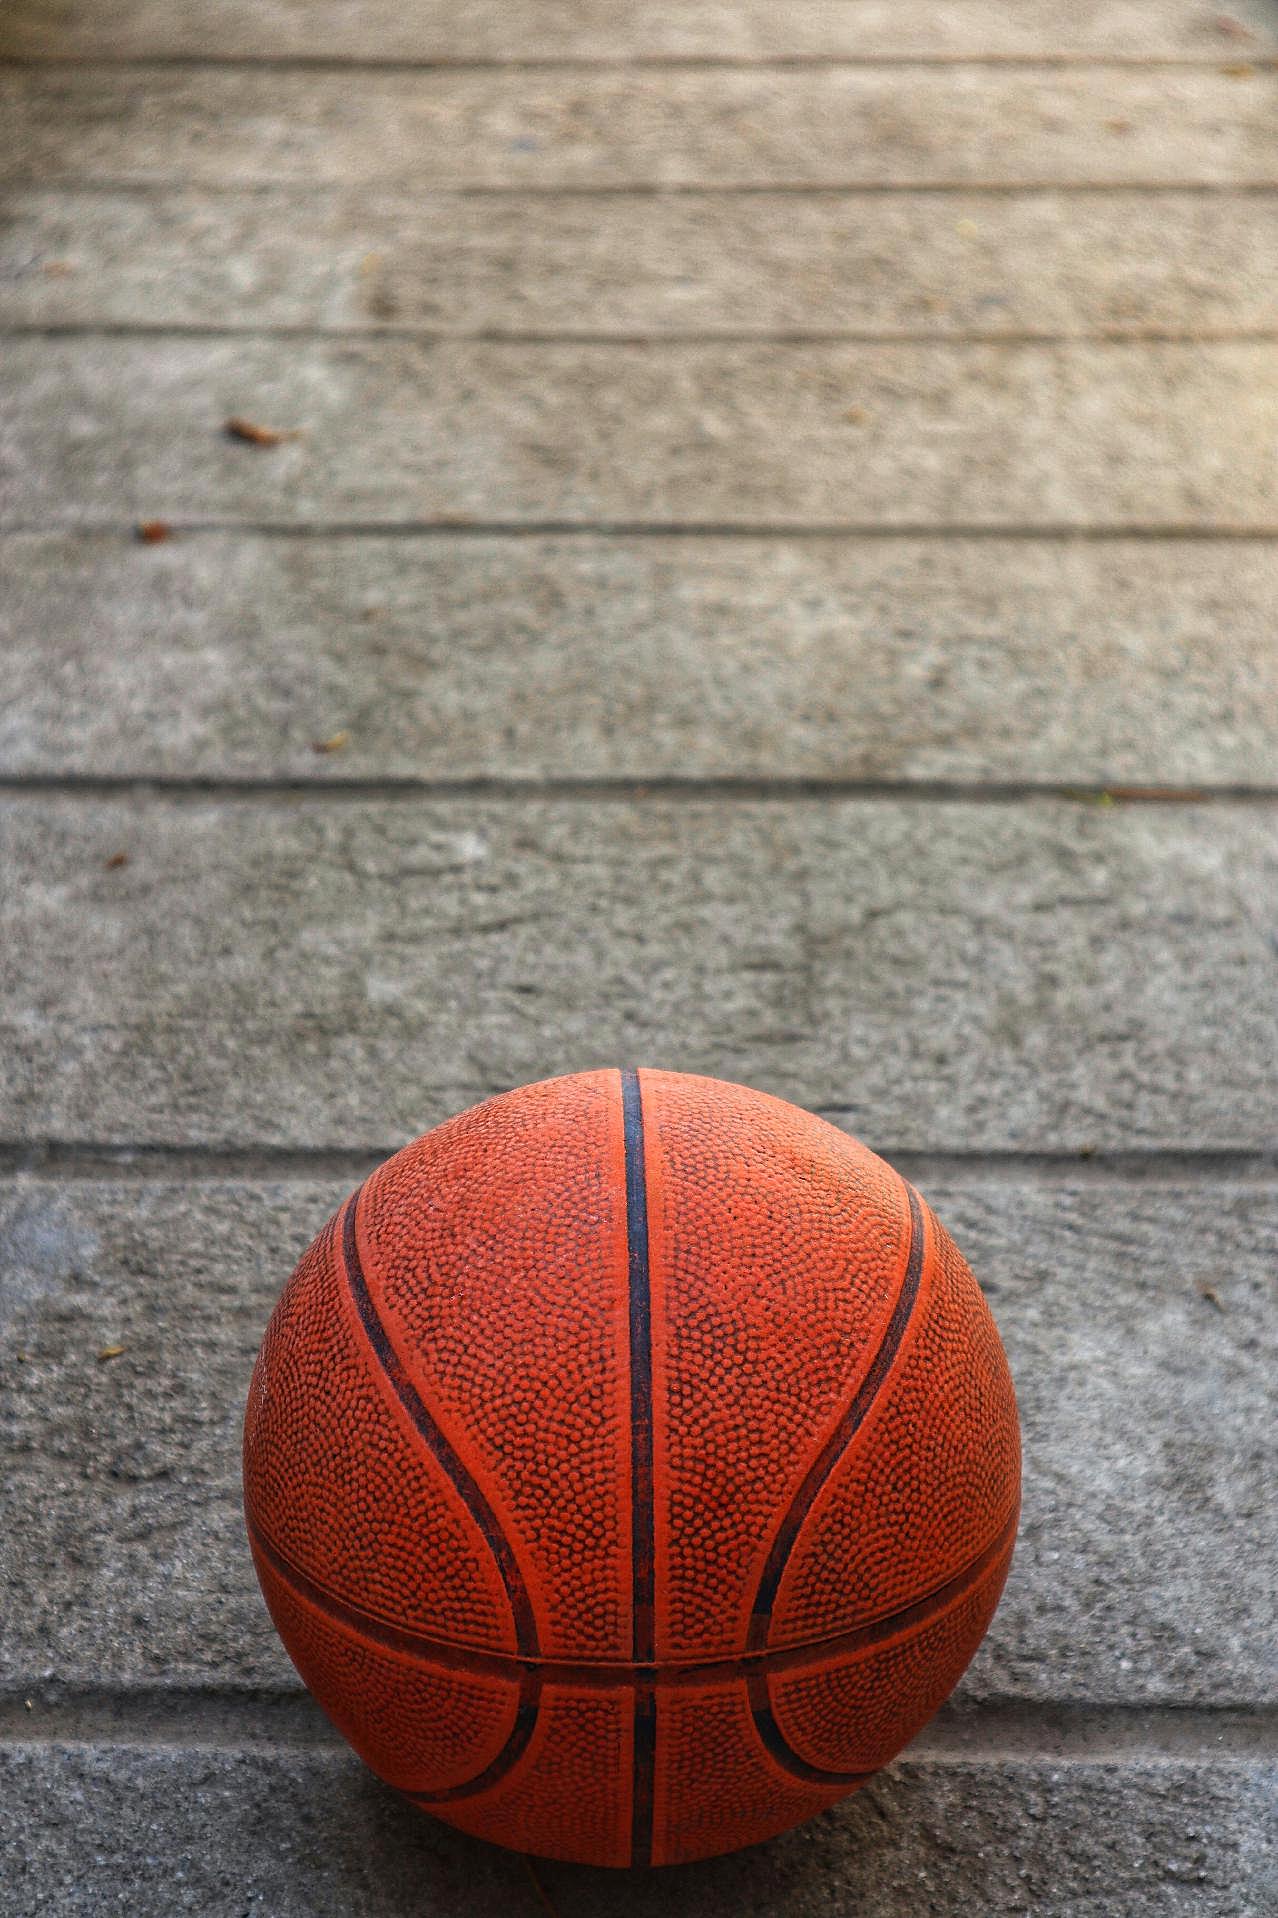 地板上的篮球图片体育用品